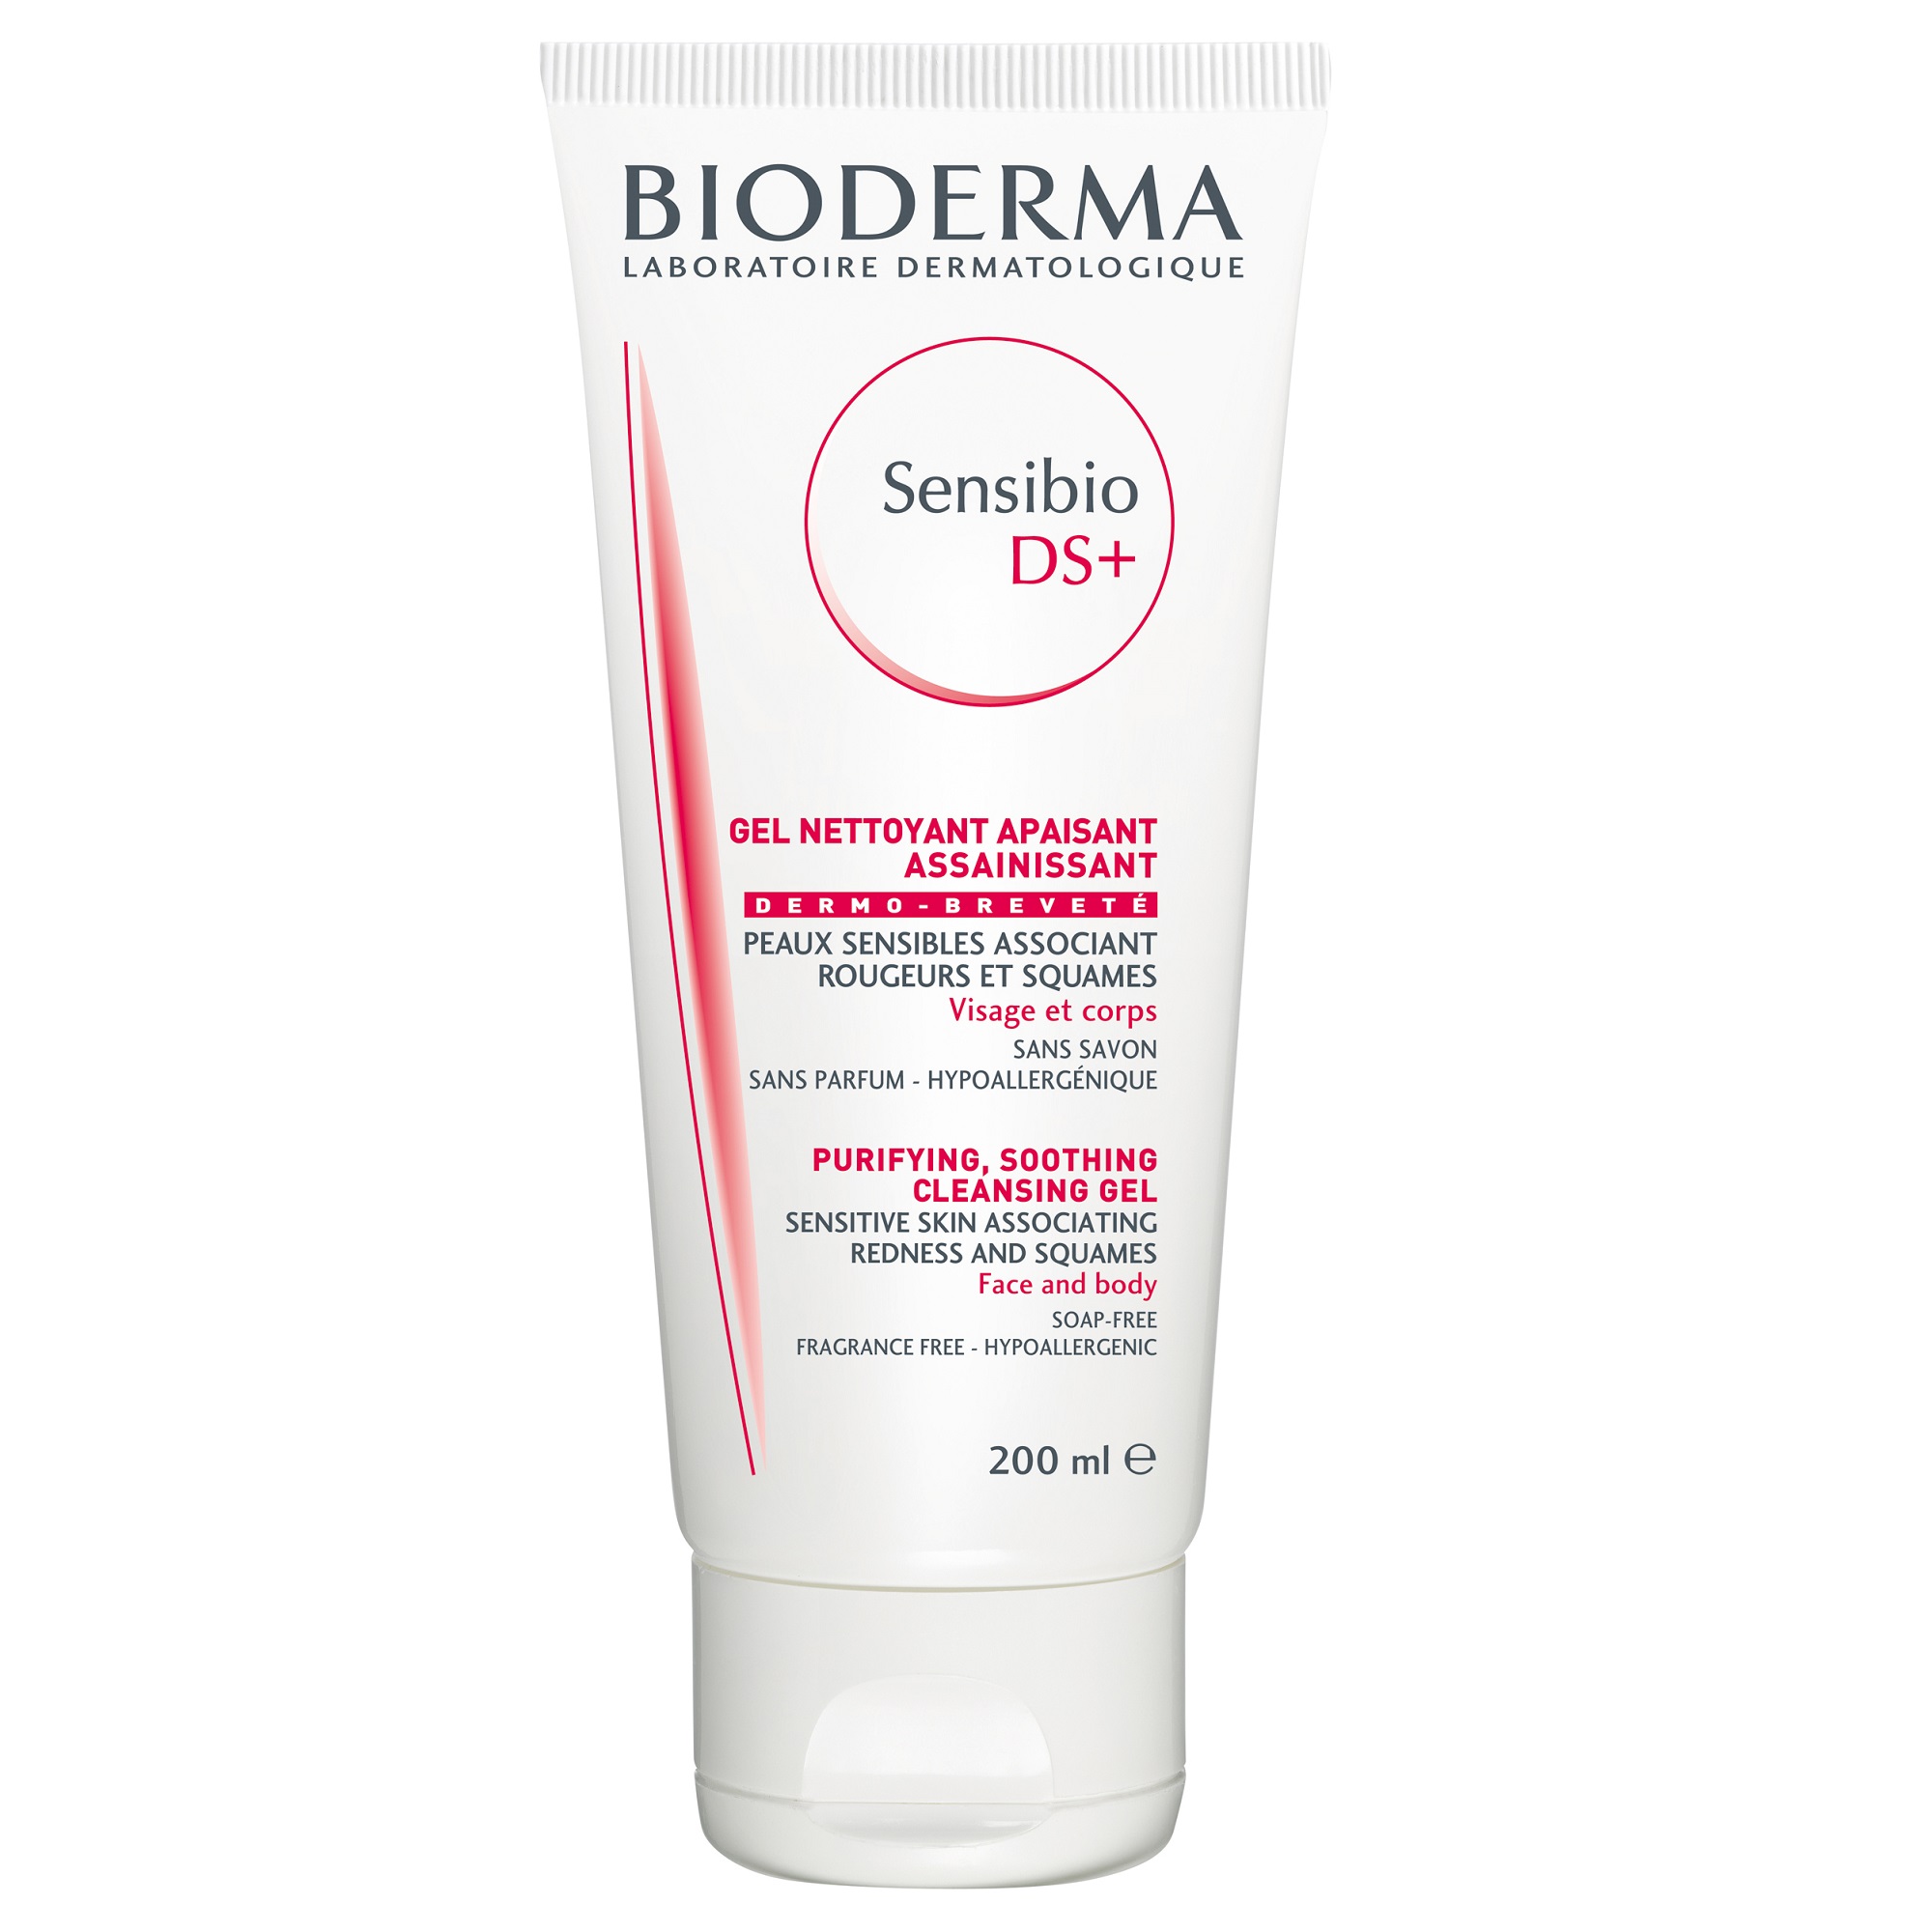 Gel de spalare si curatare - Bioderma Sensibio DS+ gel spumant purifiant pentru piele sensibila x 200ml, medik-on.ro